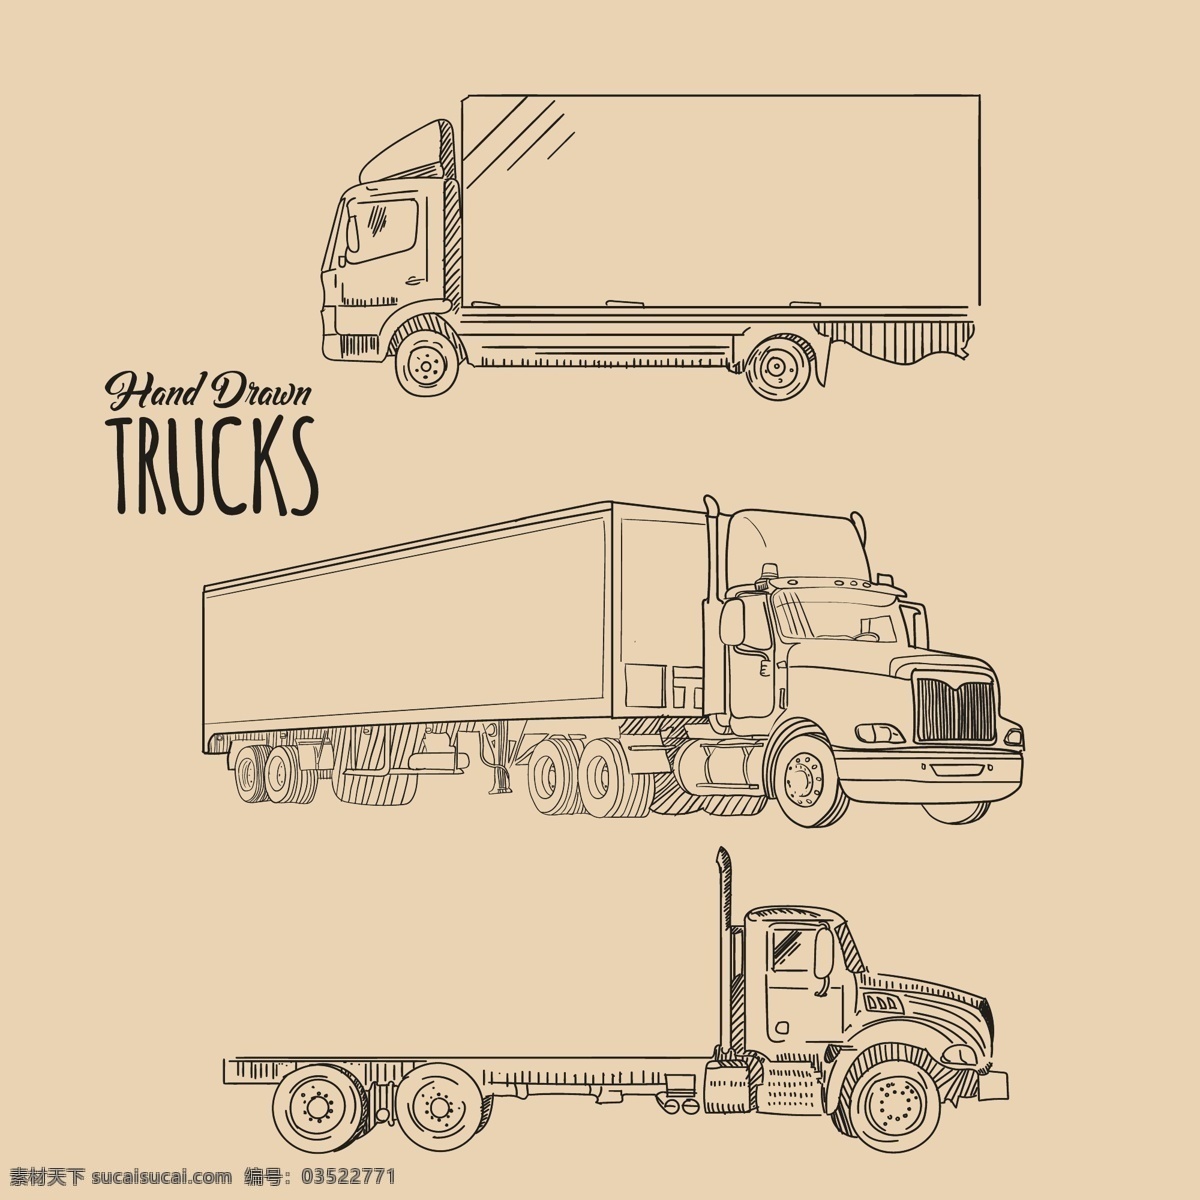 手动卡车收集 旅行 手 手拉 卡车 涂鸦 素描 绘图 运输 粗略 车轮 收集 客舱 长